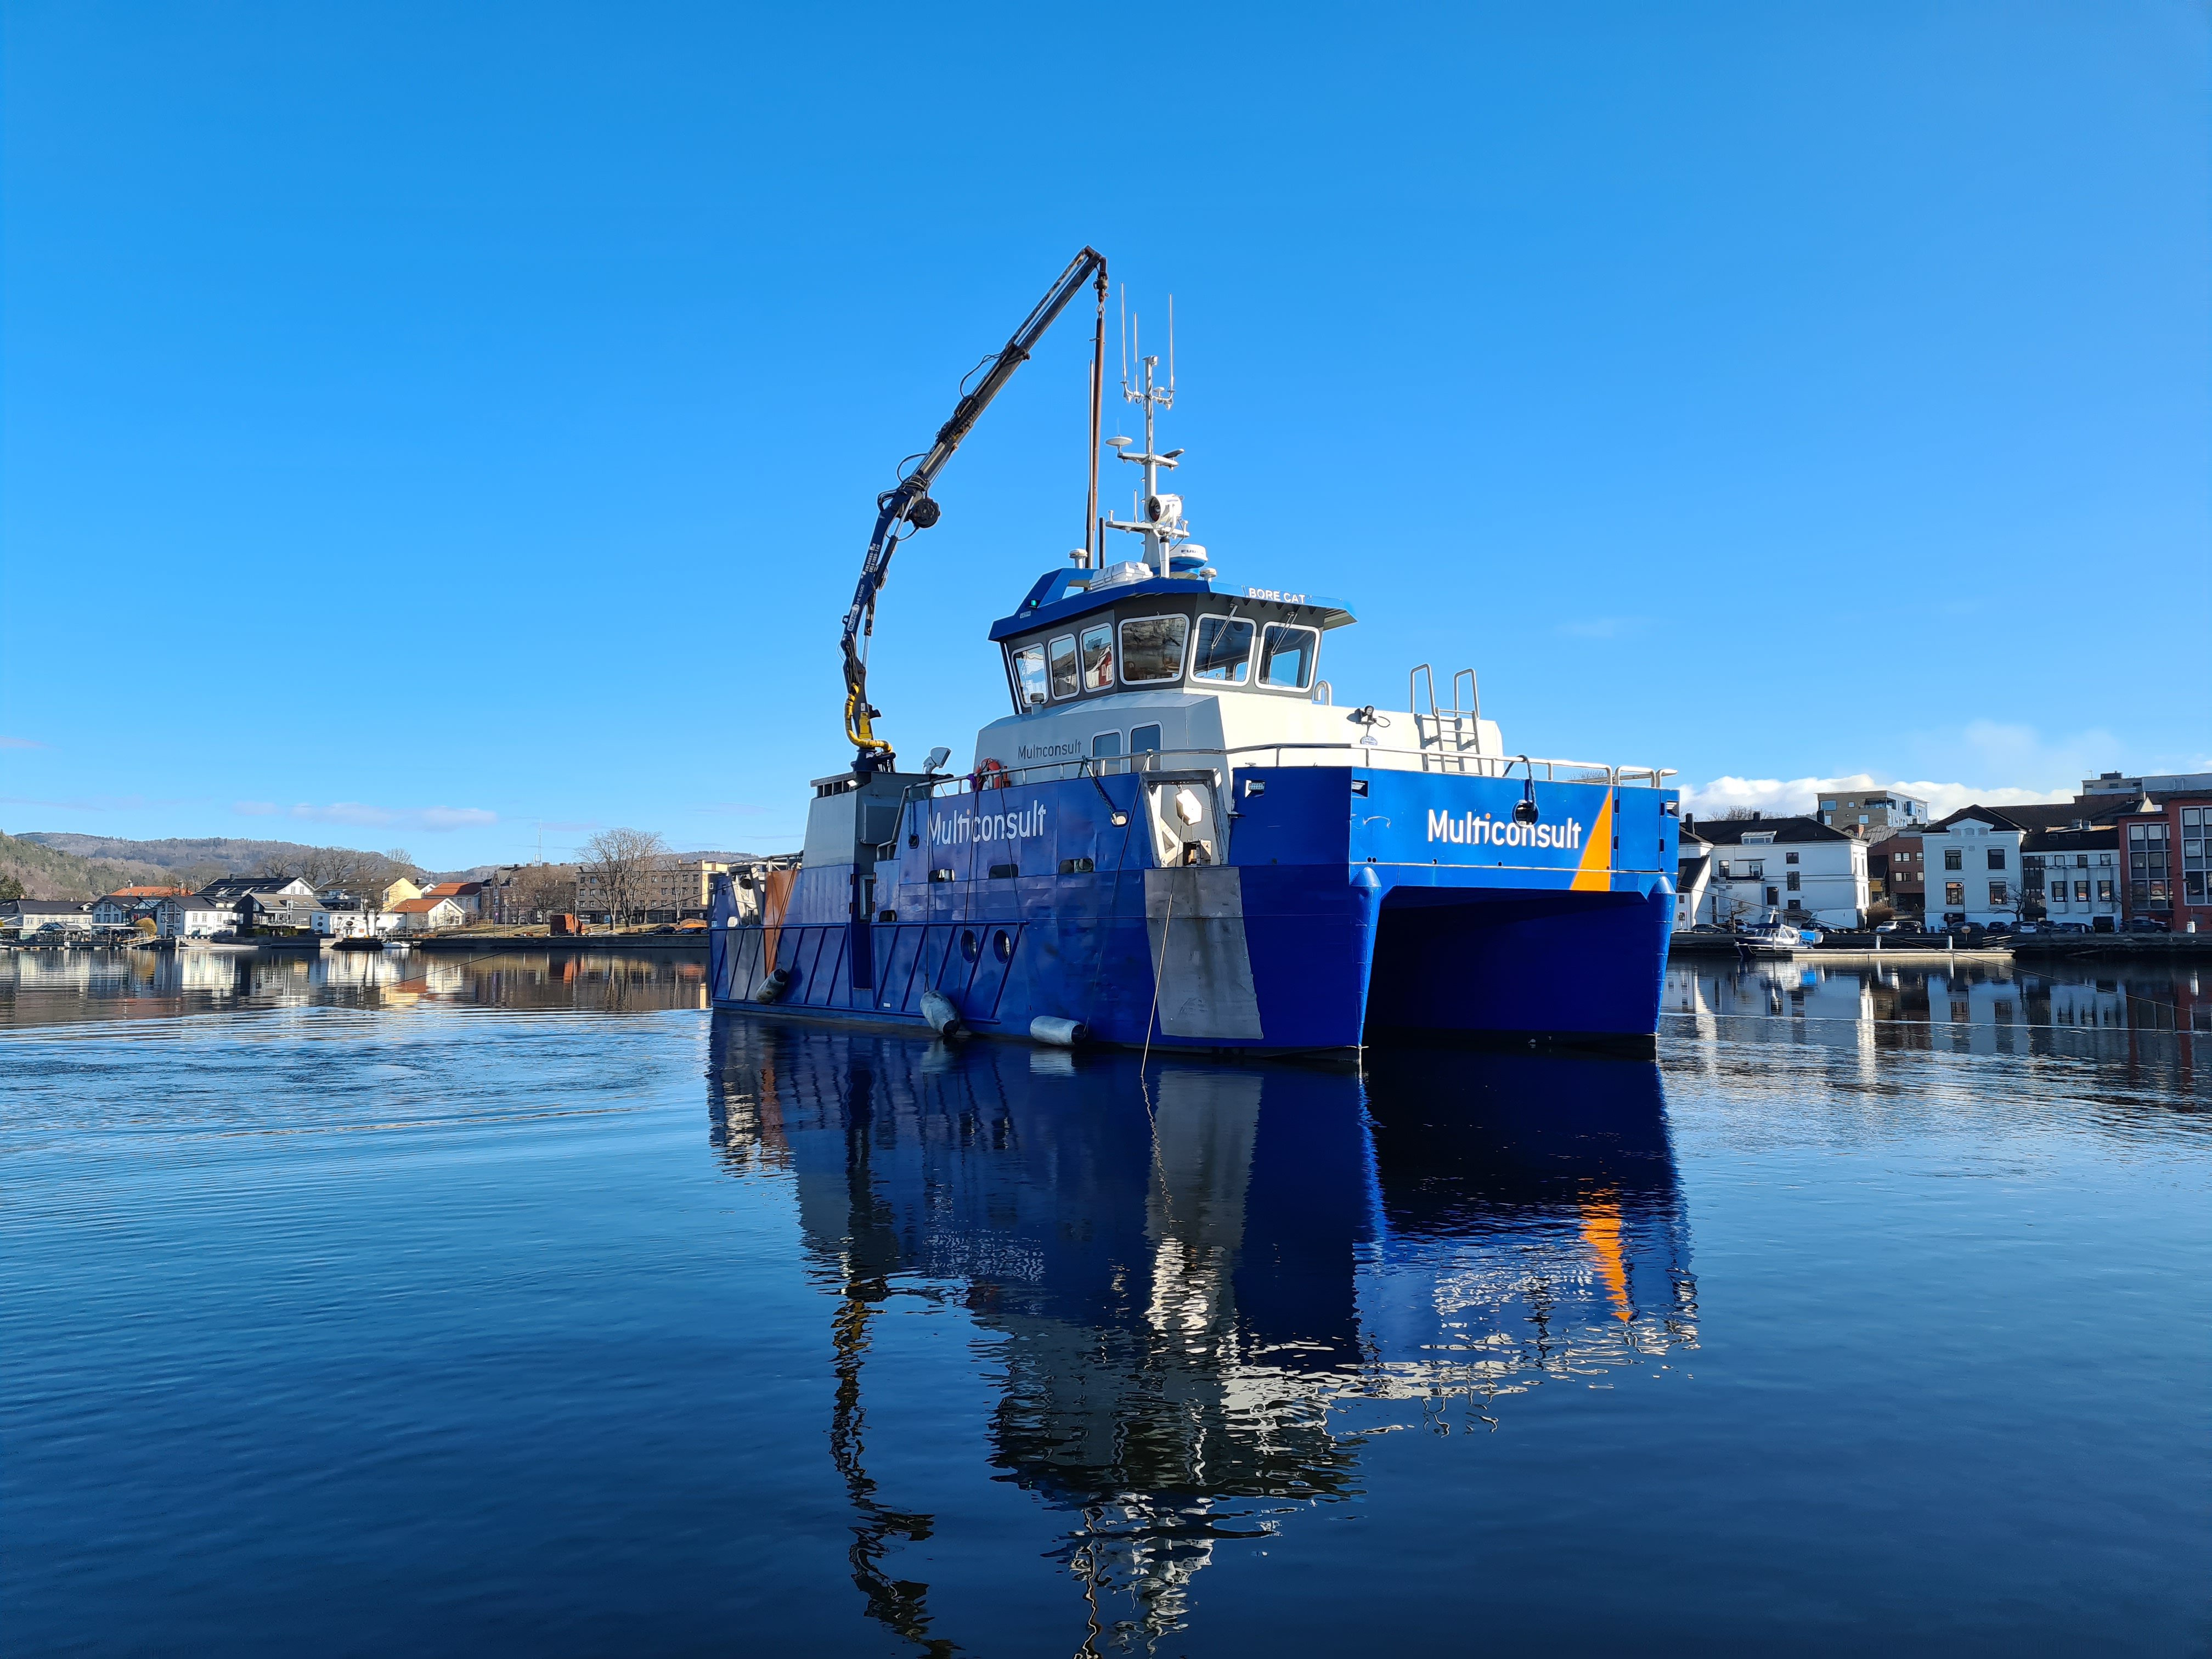 Multiconsults bore-båt har trålet Porsgrunnselva de seneste dagene. Foto: Eigil Haugen)